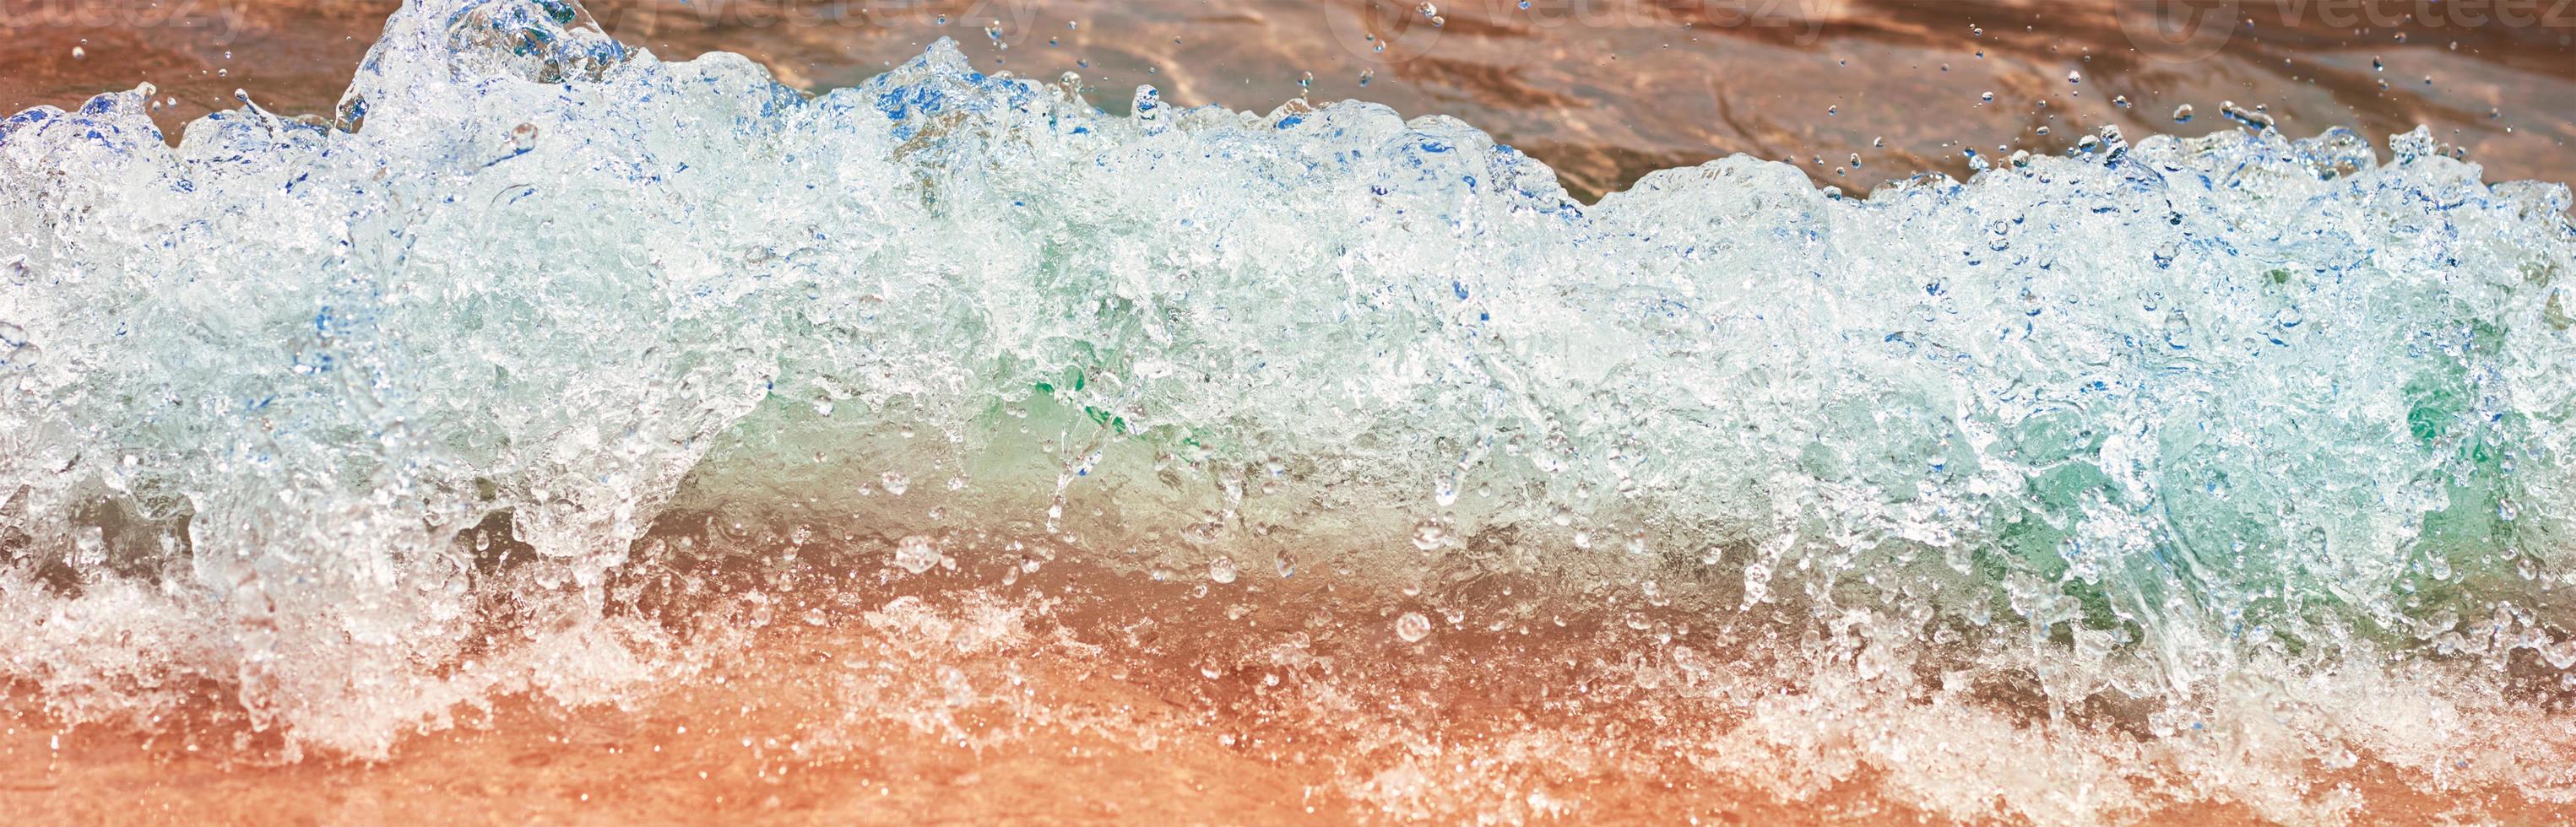 vague de mer sur la plage de sable, mise au point douce. fond d'été photo